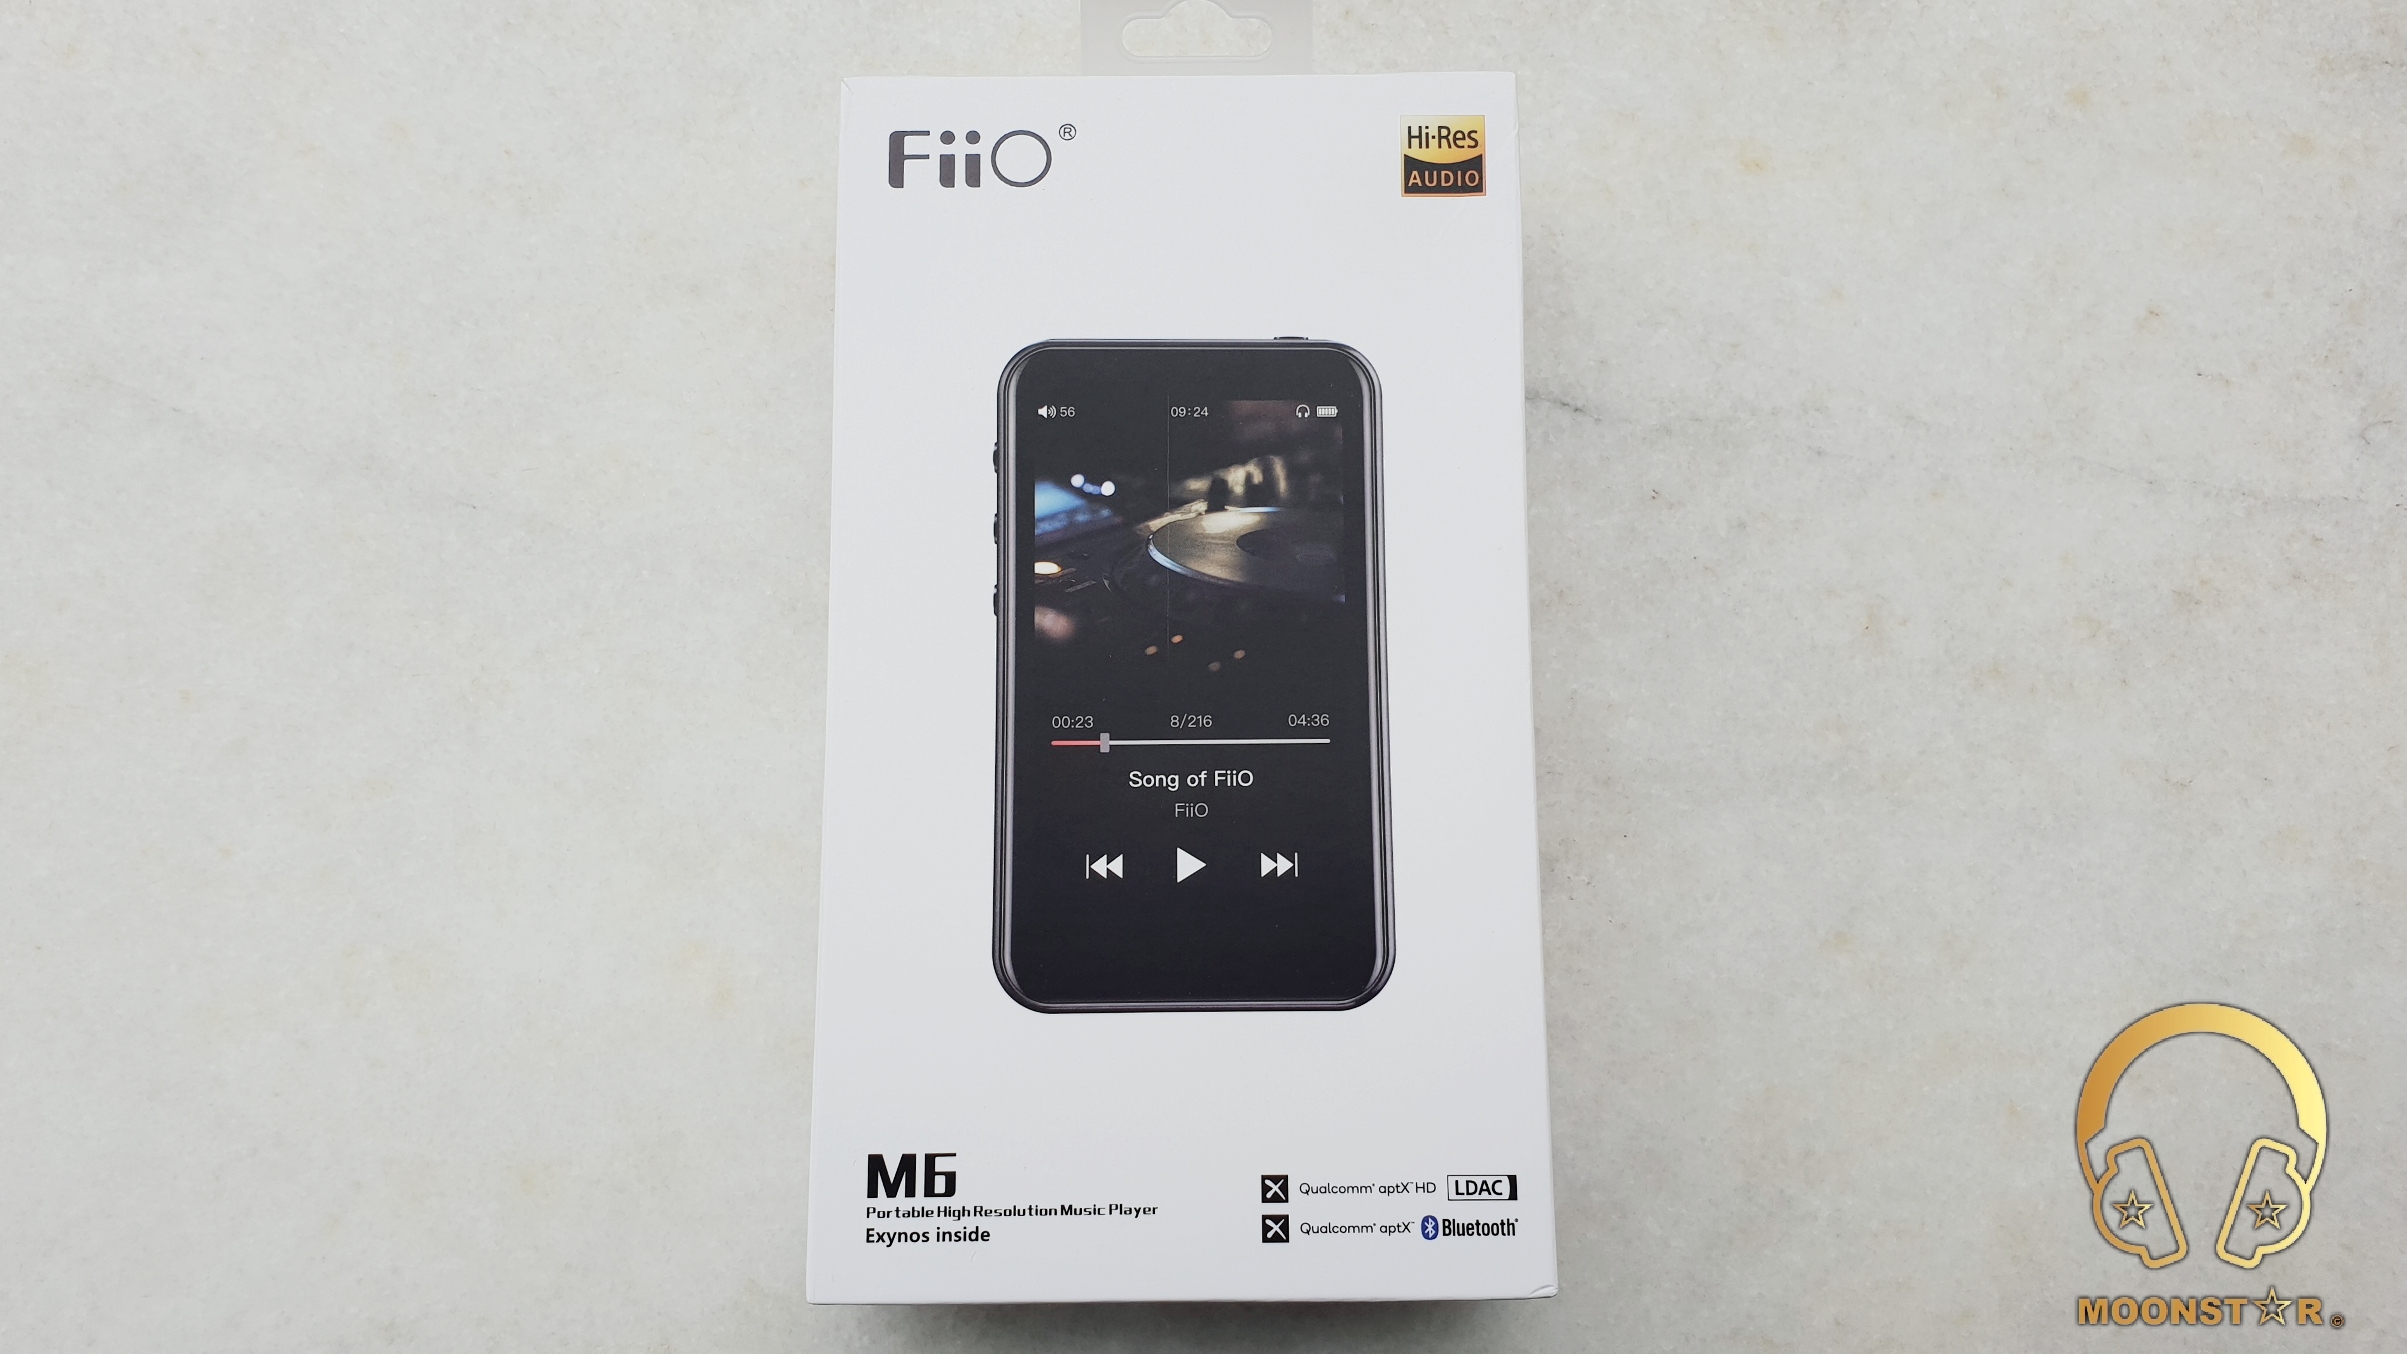 オーディオ機器 ポータブルプレーヤー FiiO M6 Digital Audio Player Review » MOONSTAR Reviews